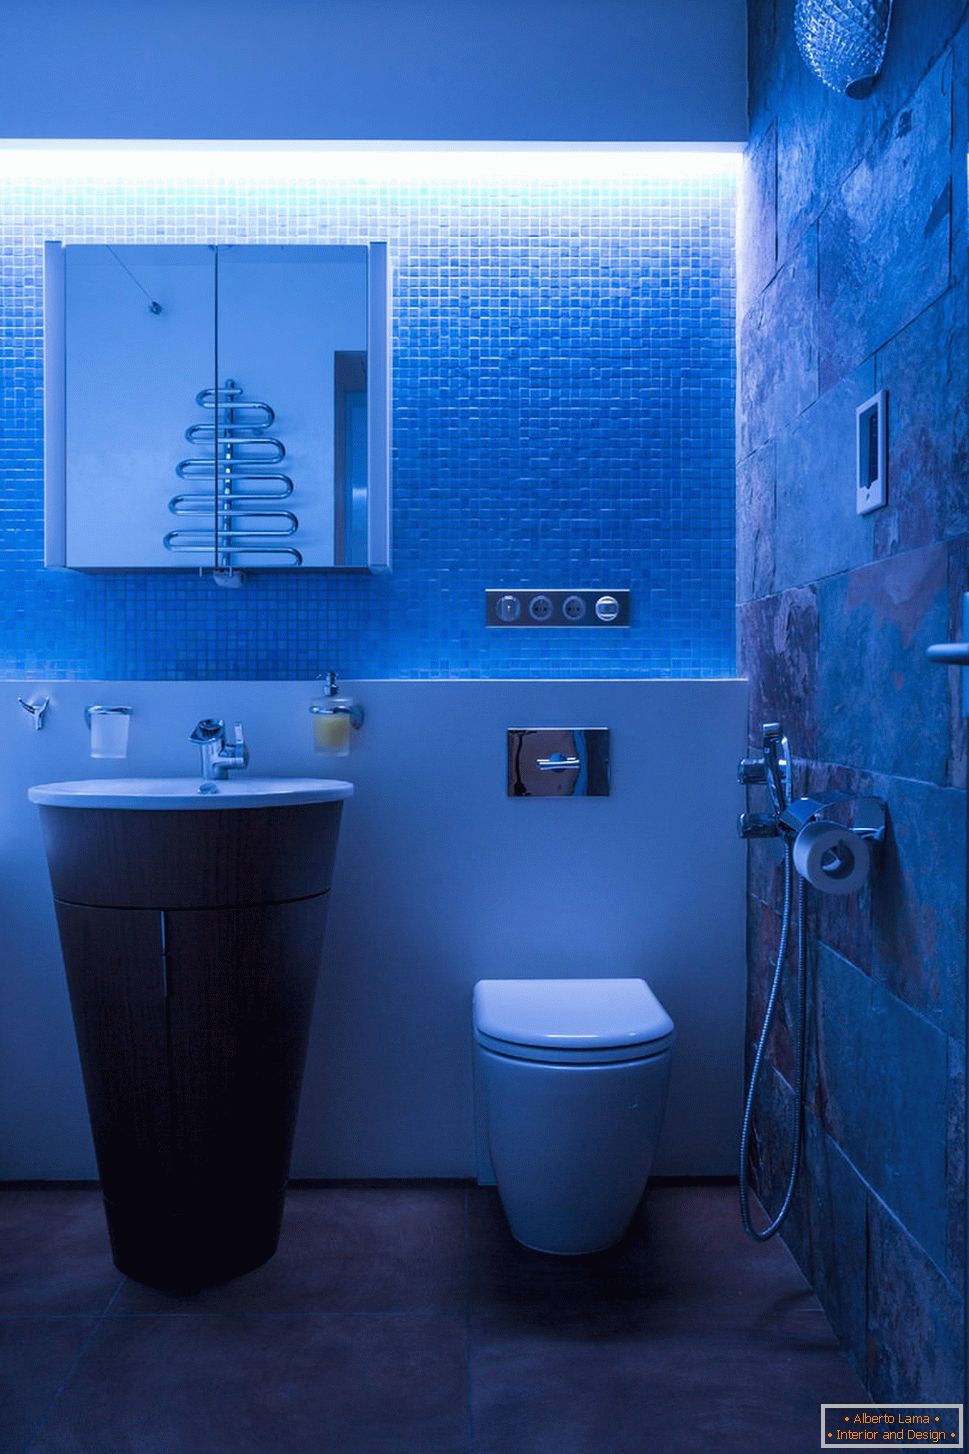 Badezimmer in der Wohnung mit kontrollierter Beleuchtung